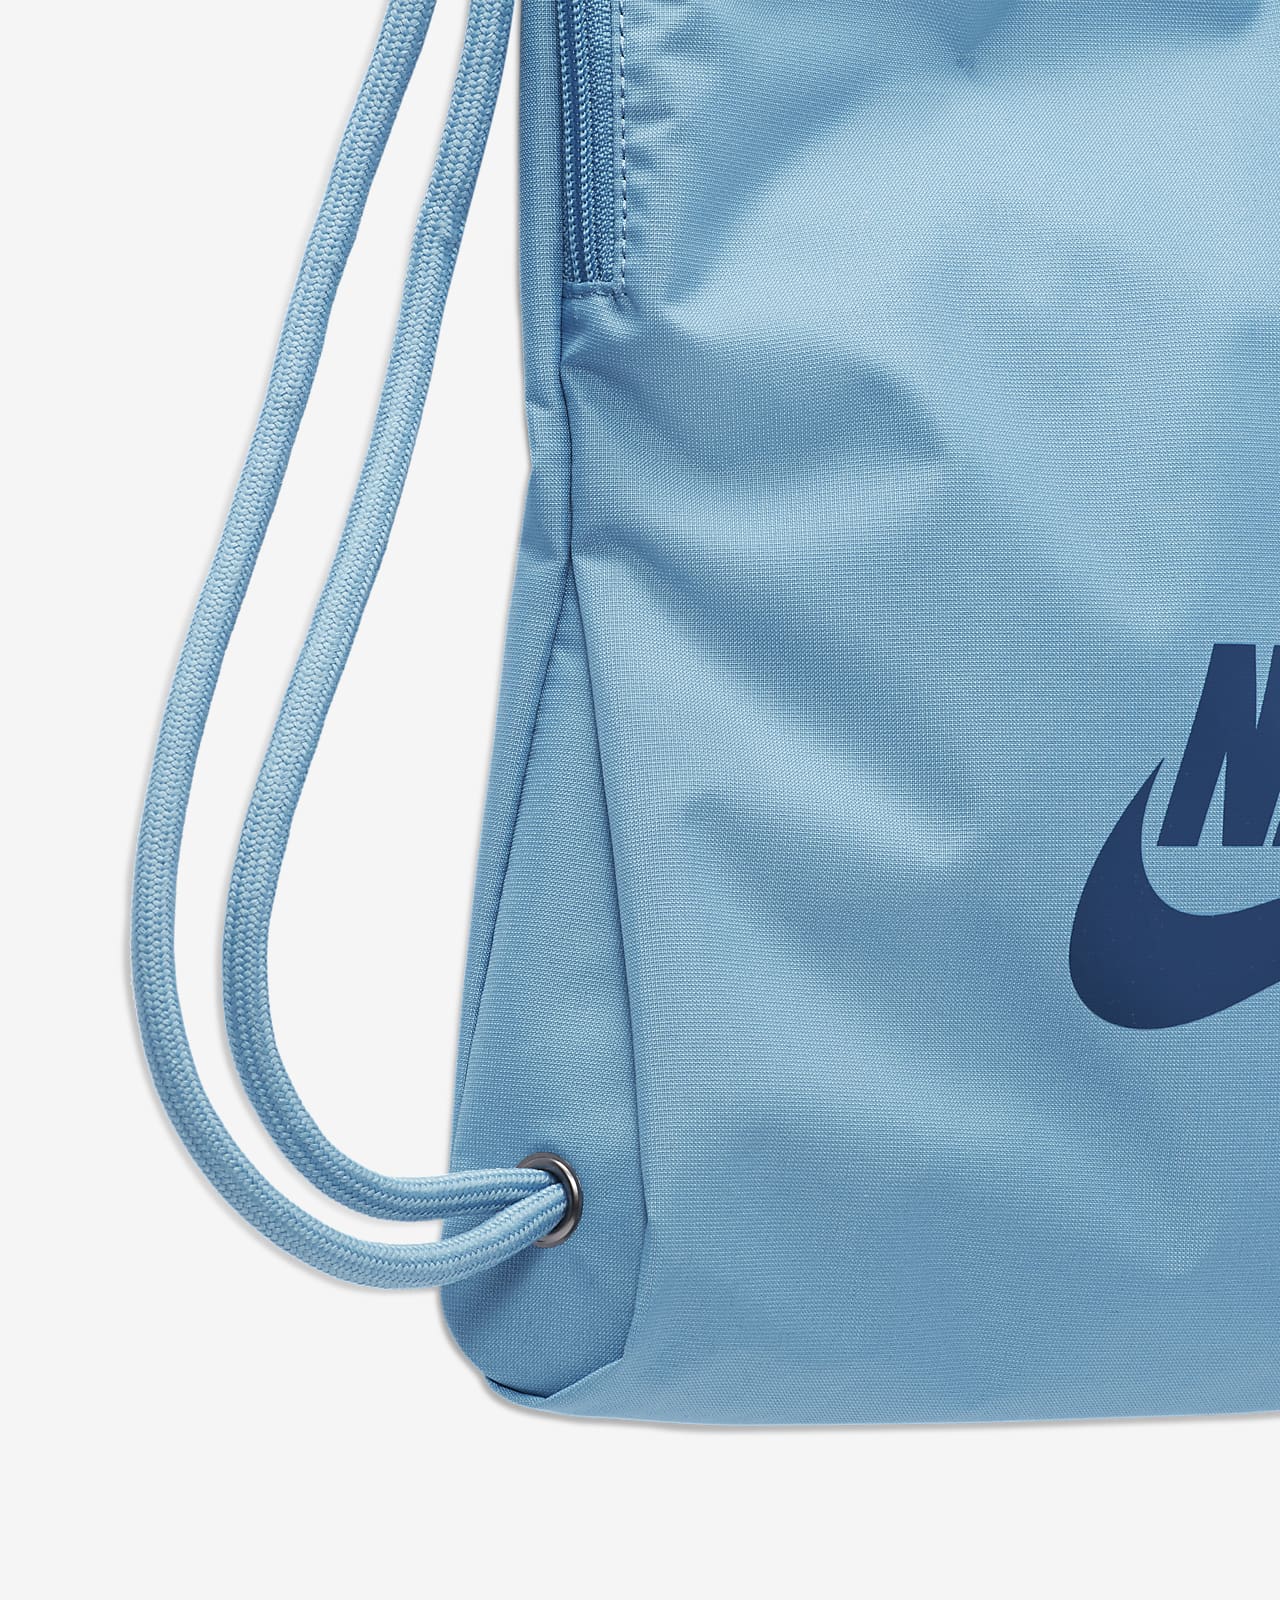 Nike Drawstring Bag/Gymsack Oversized Nike Logo - Blue & Seafoam Green